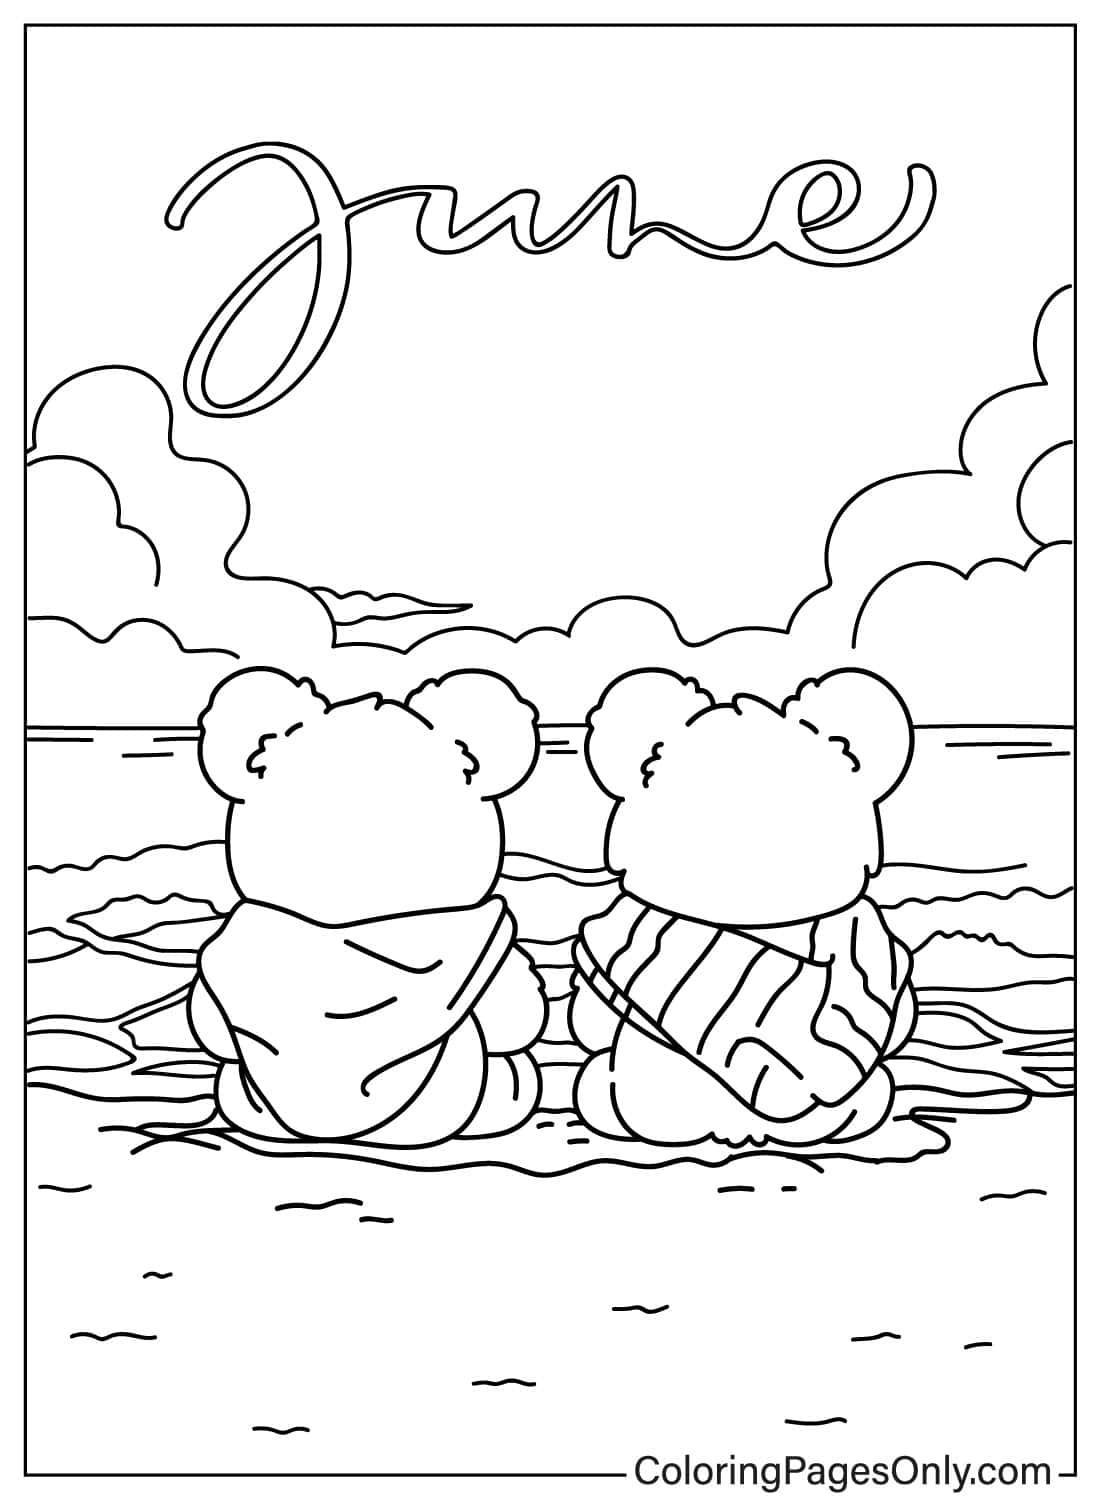 Deux ours assis et regardant la mer à partir de juin